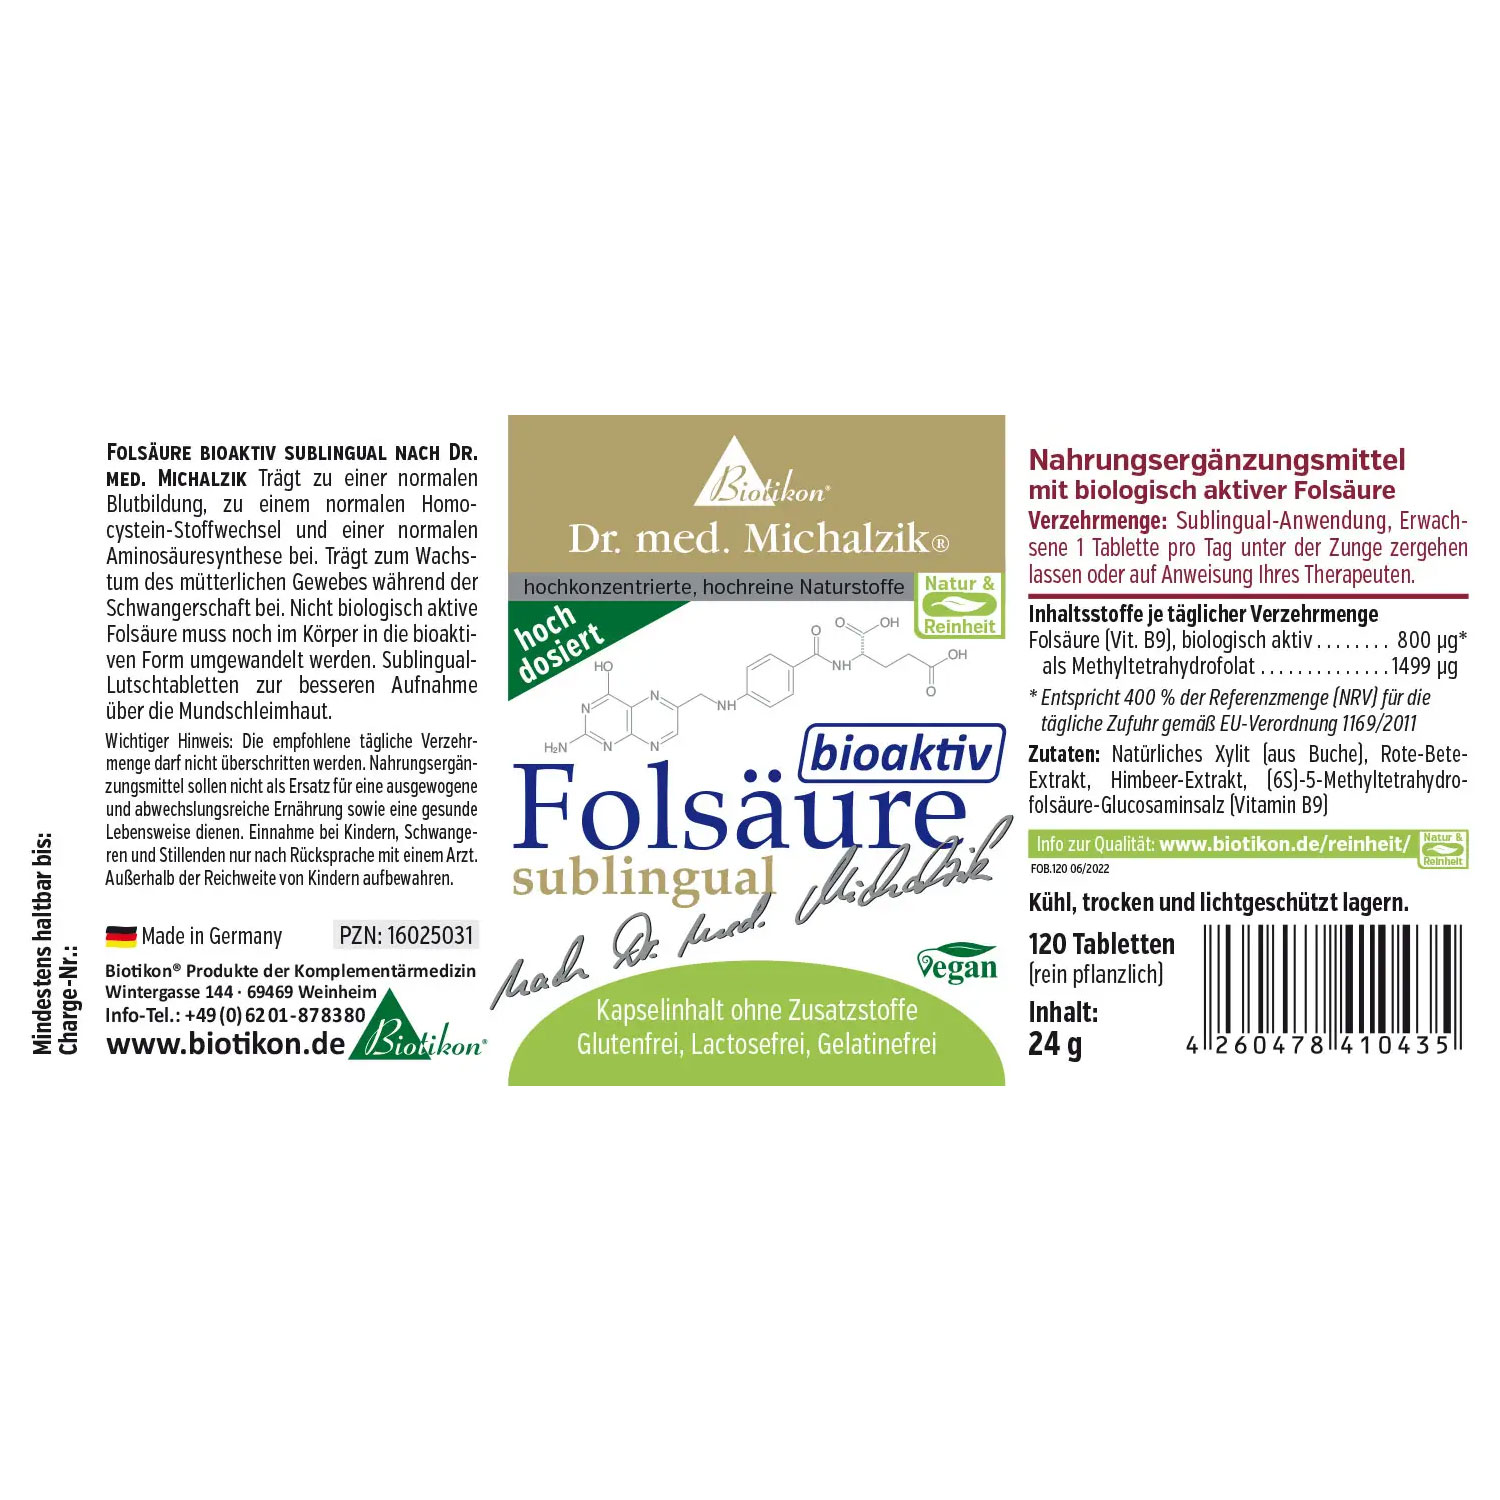 Folsäure bioaktiv (Vitamin B9) von Biotikon - Etikett